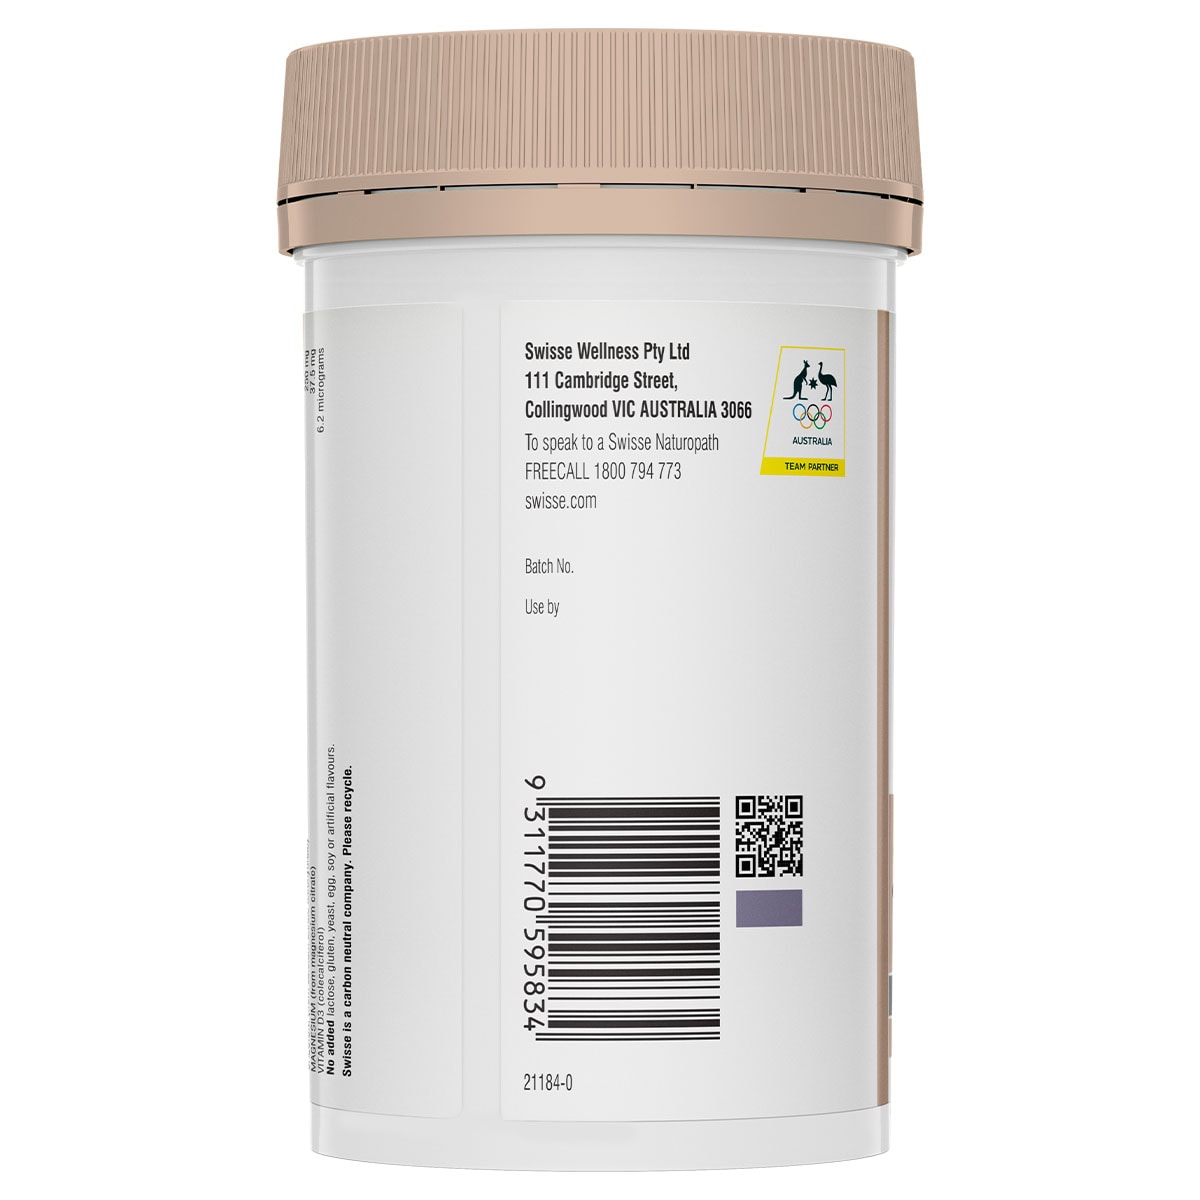 Swisse Ultiboost Magnesium Calcium + Vitamin D3 120 Tablets